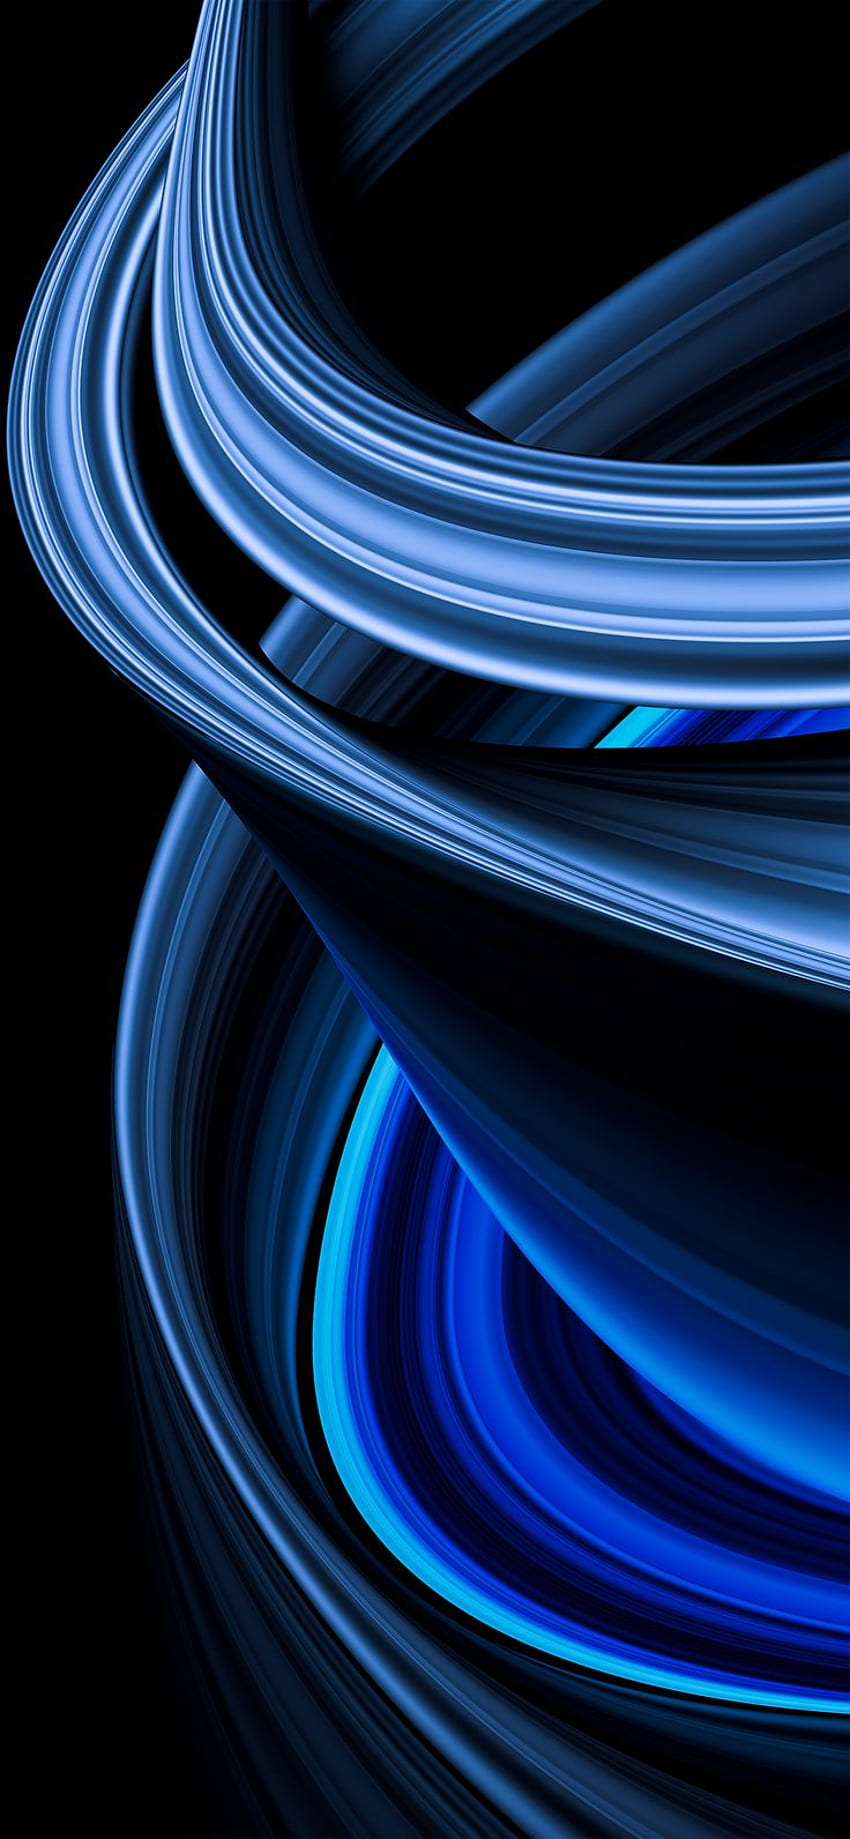 Envoltura azul abstracta. iPhone paisaje, iPhone verano, Negro y azul, Negro y azul Genial iPhone fondo de pantalla del teléfono